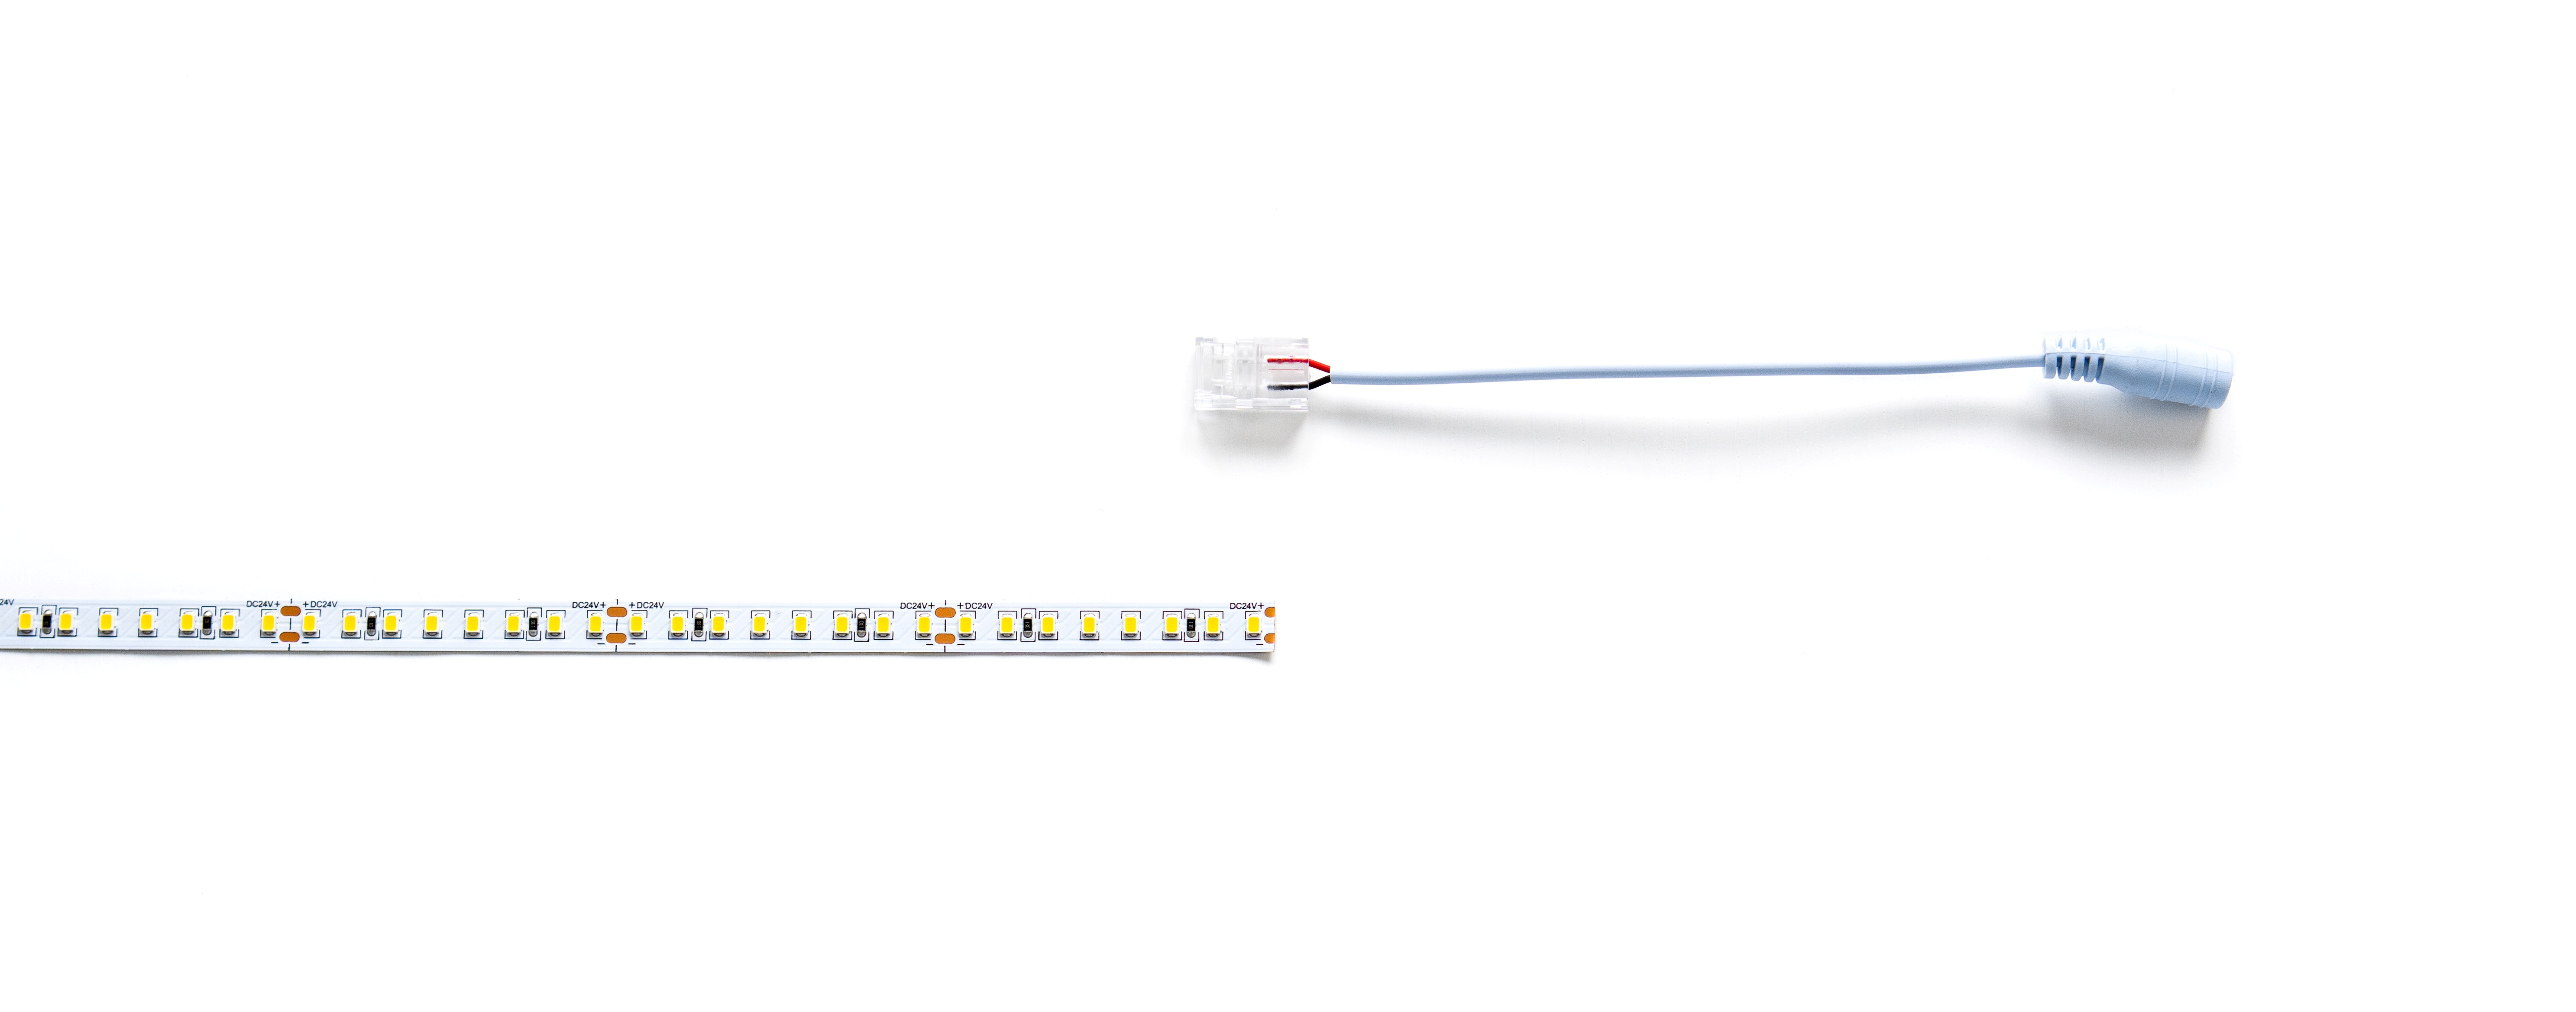 Sposób łączenia taśmy LED - złącze LED dwustronnego z gniazden